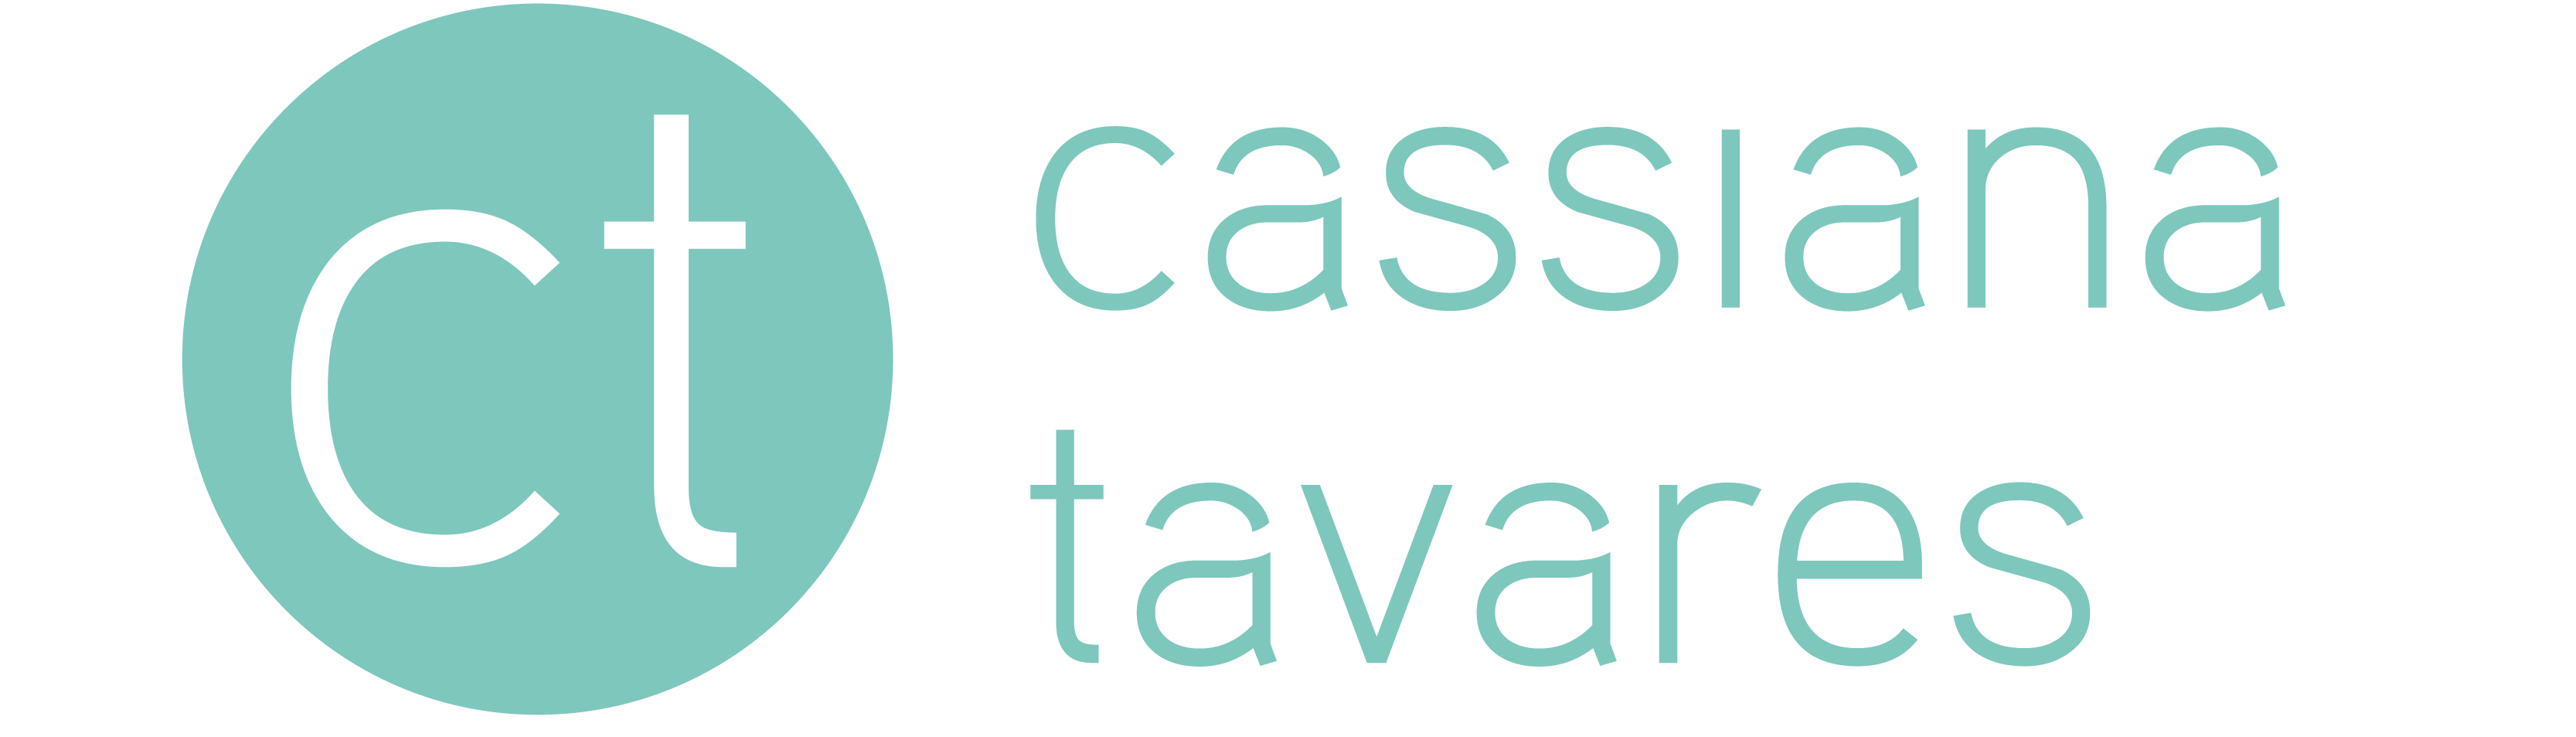 Cassiana Tavares